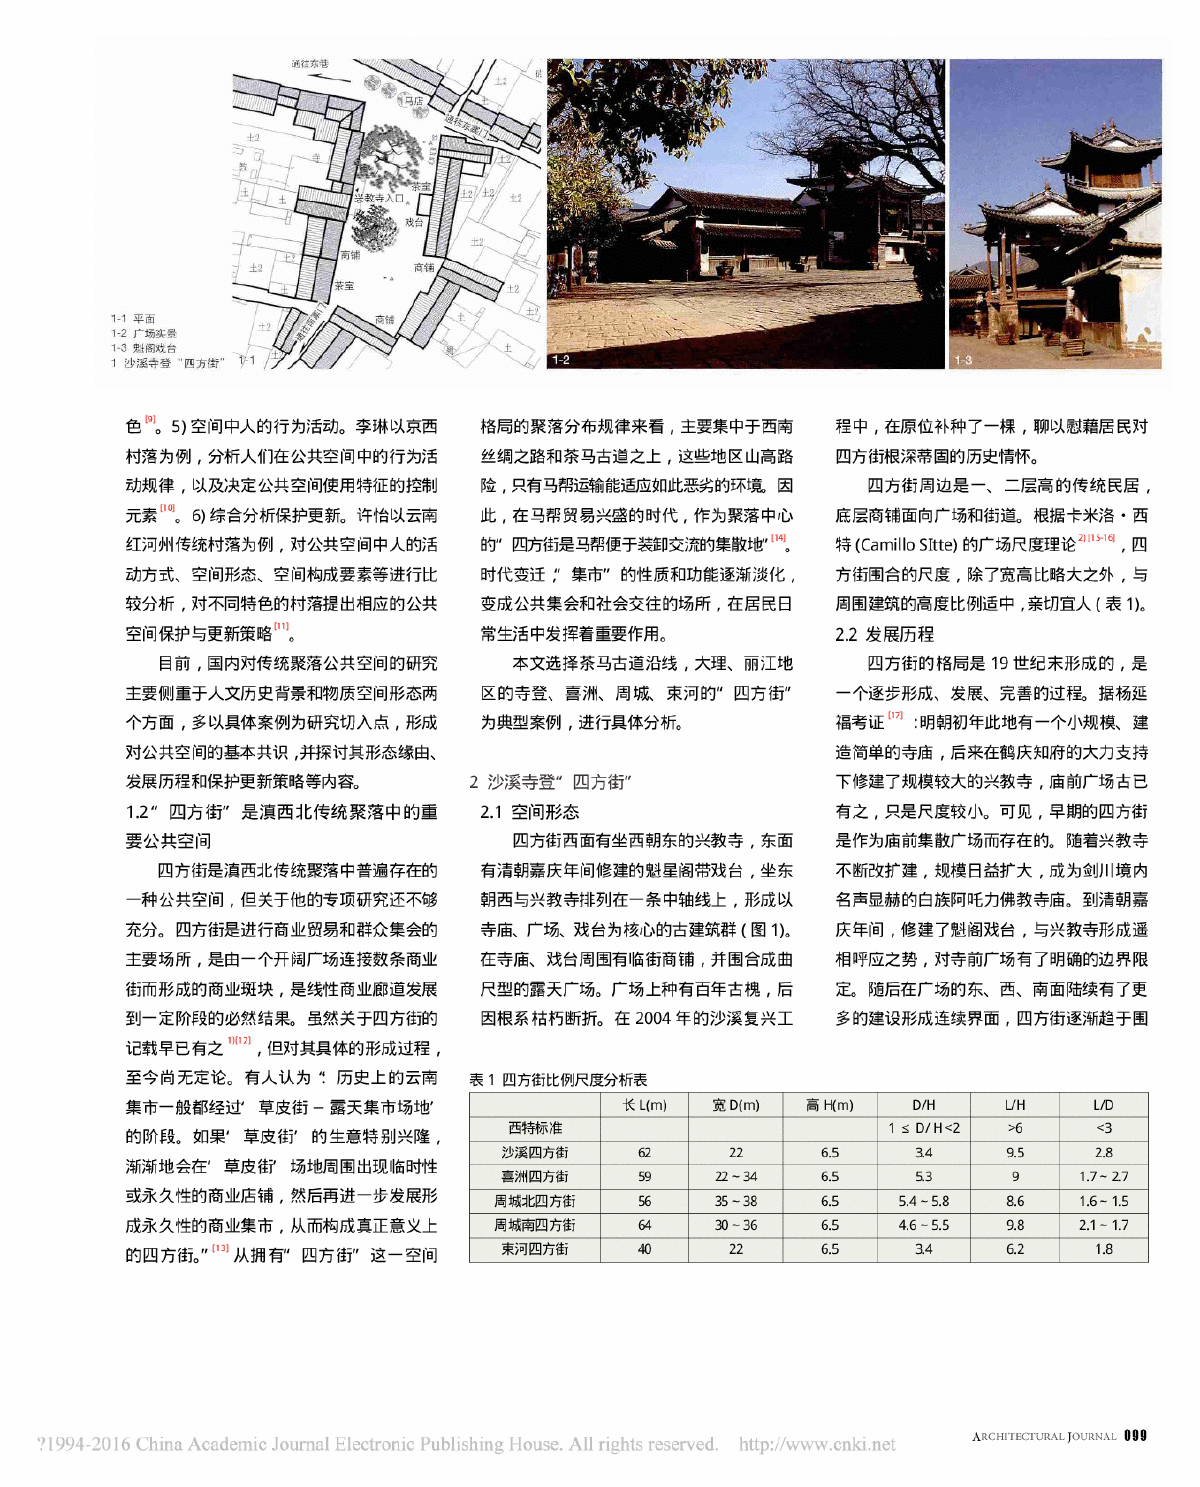 大理丽江传统聚落中四方街广场空间形态及发展演变研究-图二